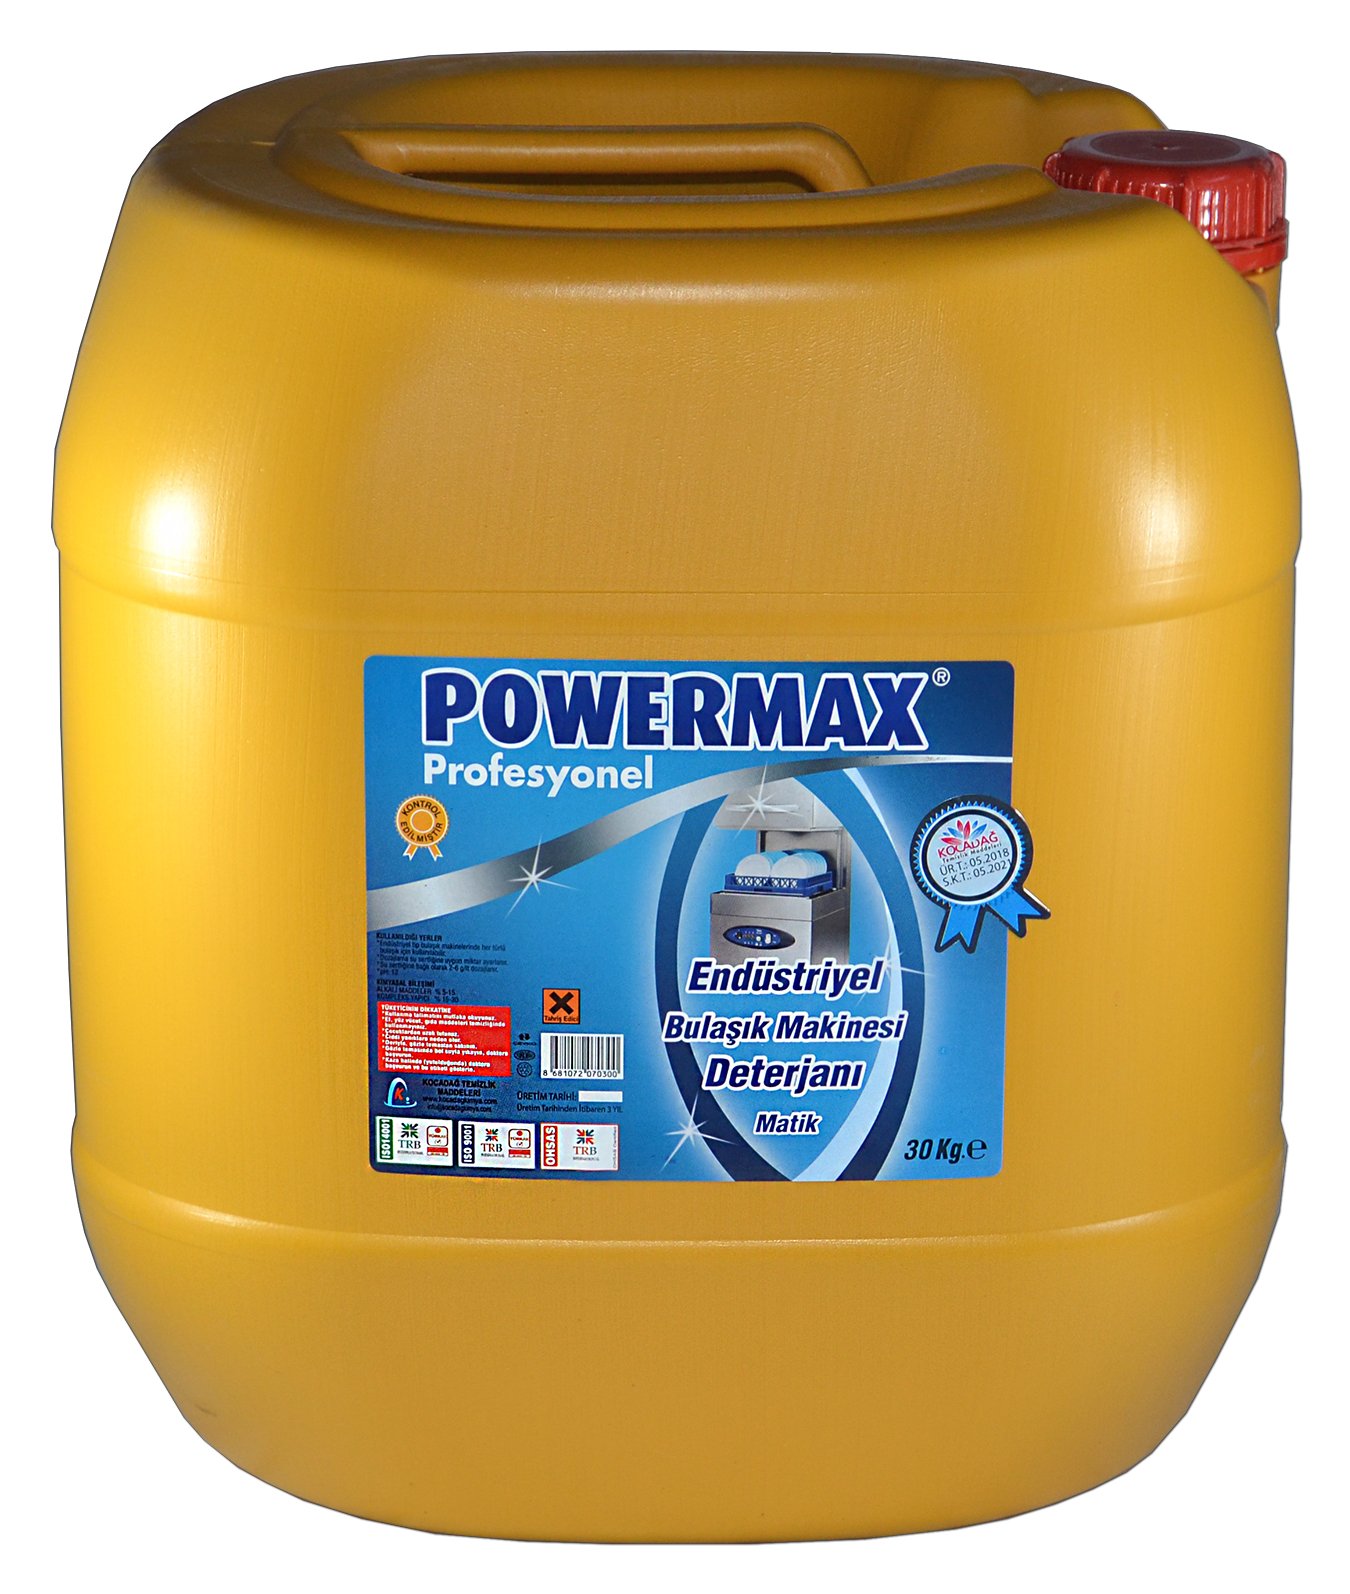 Powermax Endustriyel Bulaşık Makinesi Deterjanı 30 lt